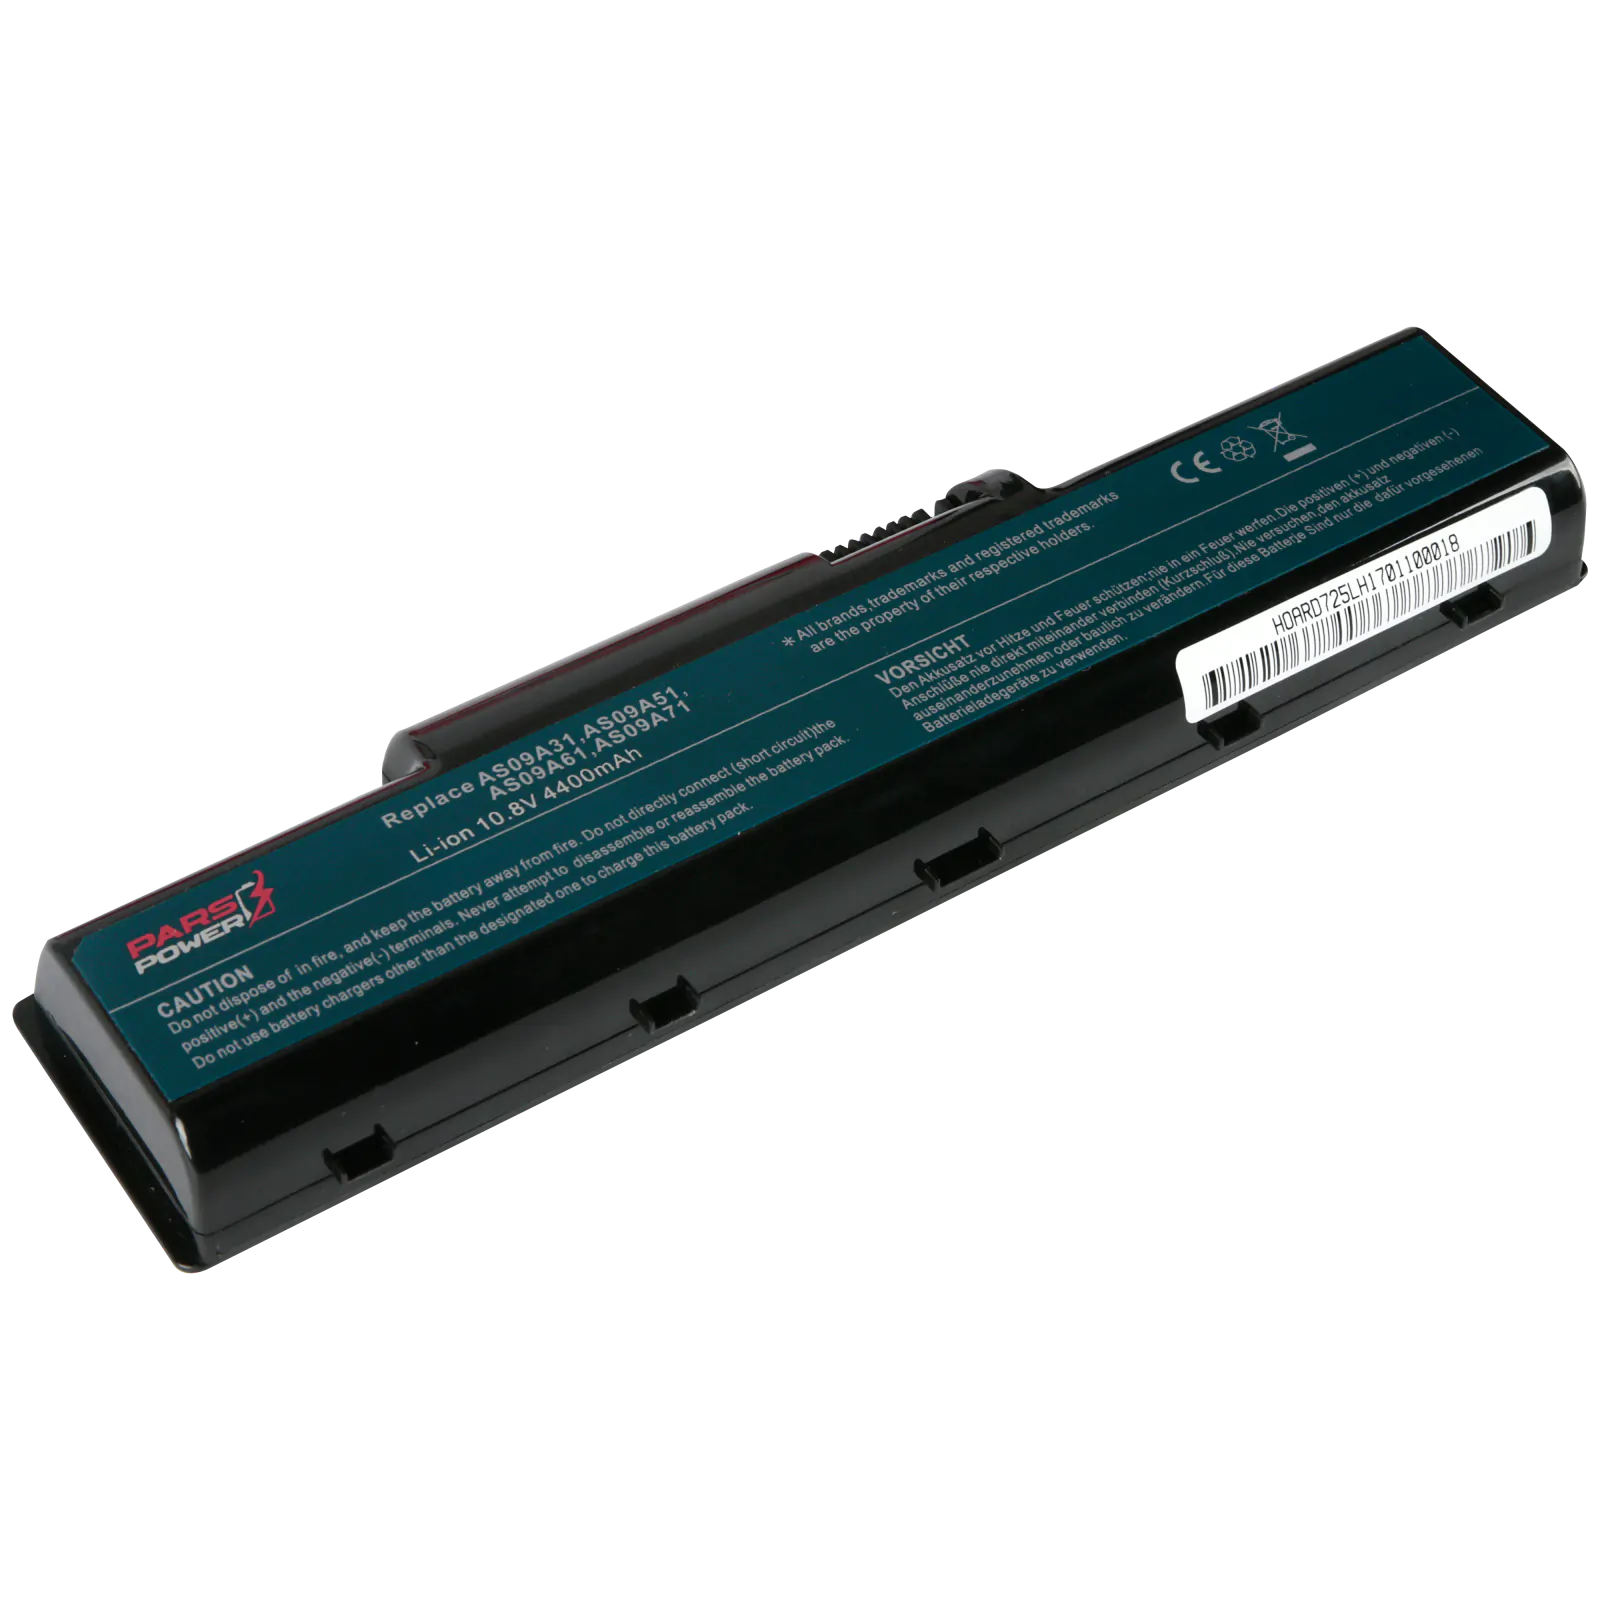 Packard Bell AS09A31, AS09A36, AS09A41 Notebook Batarya - Pil (Pars Power)